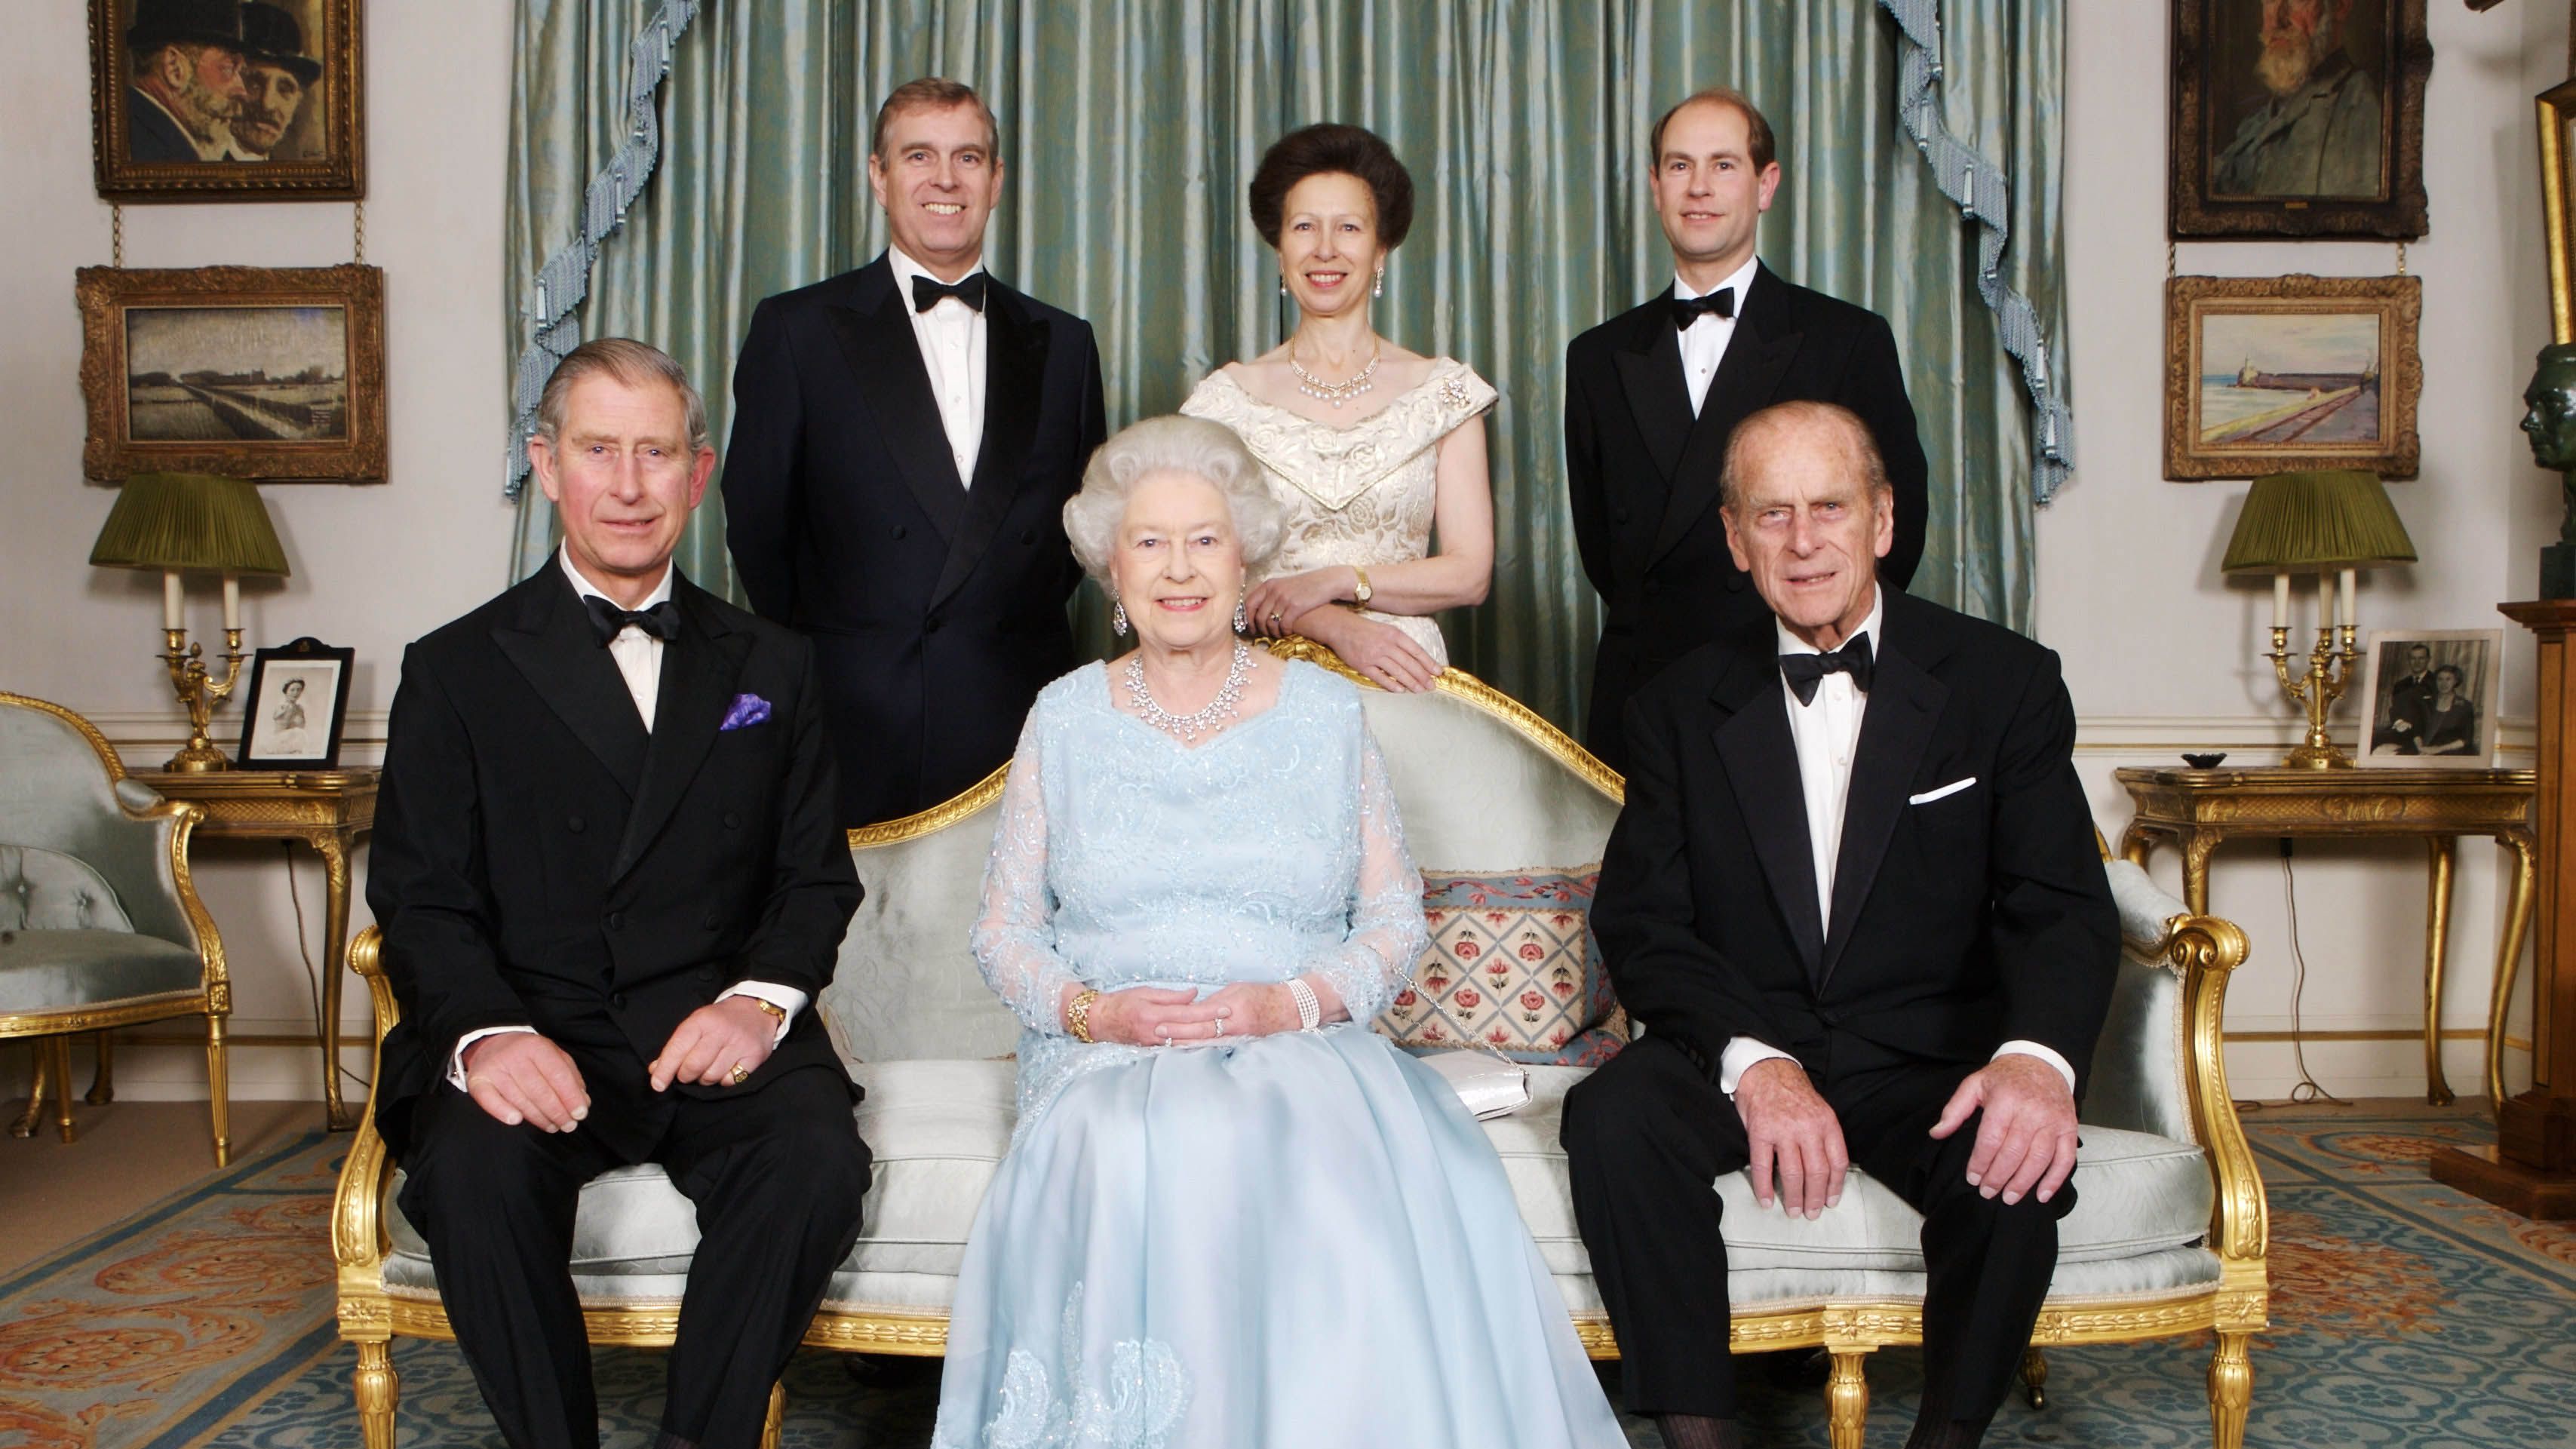 Queen Elizabeth II: Biography, British Queen, Royal Family